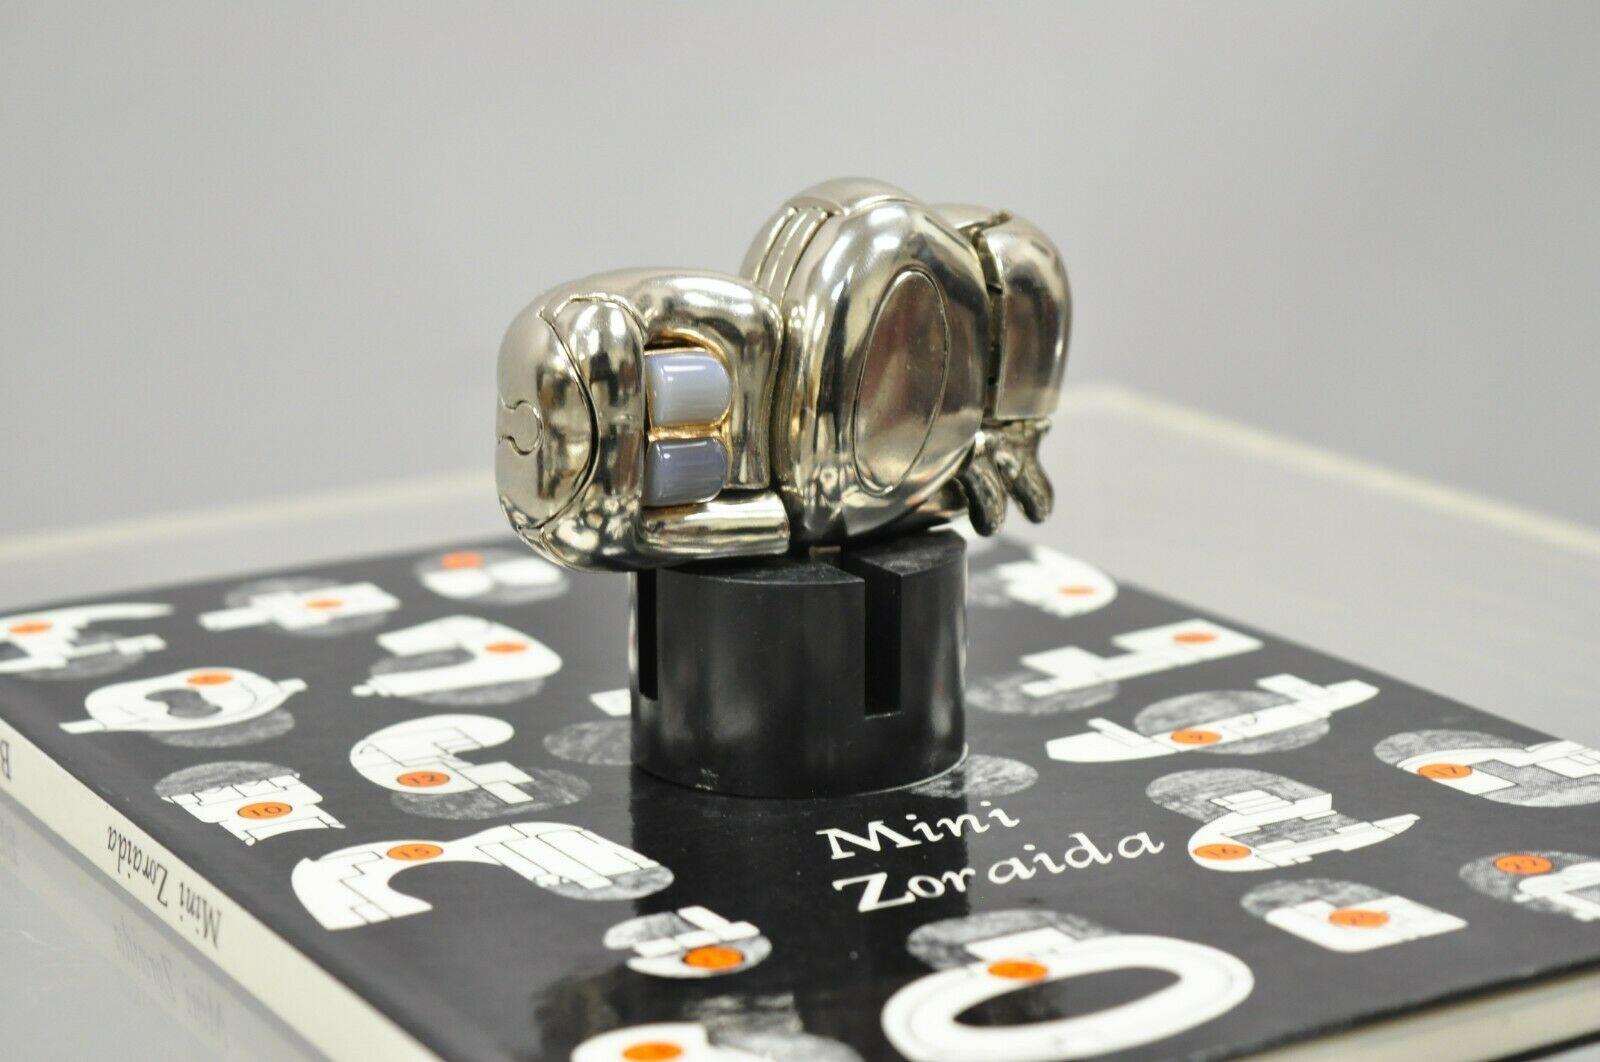 Miguel Berrocal La Mini Zoraida Nickel Plated Puzzle Sculpture Box and Book For Sale 4